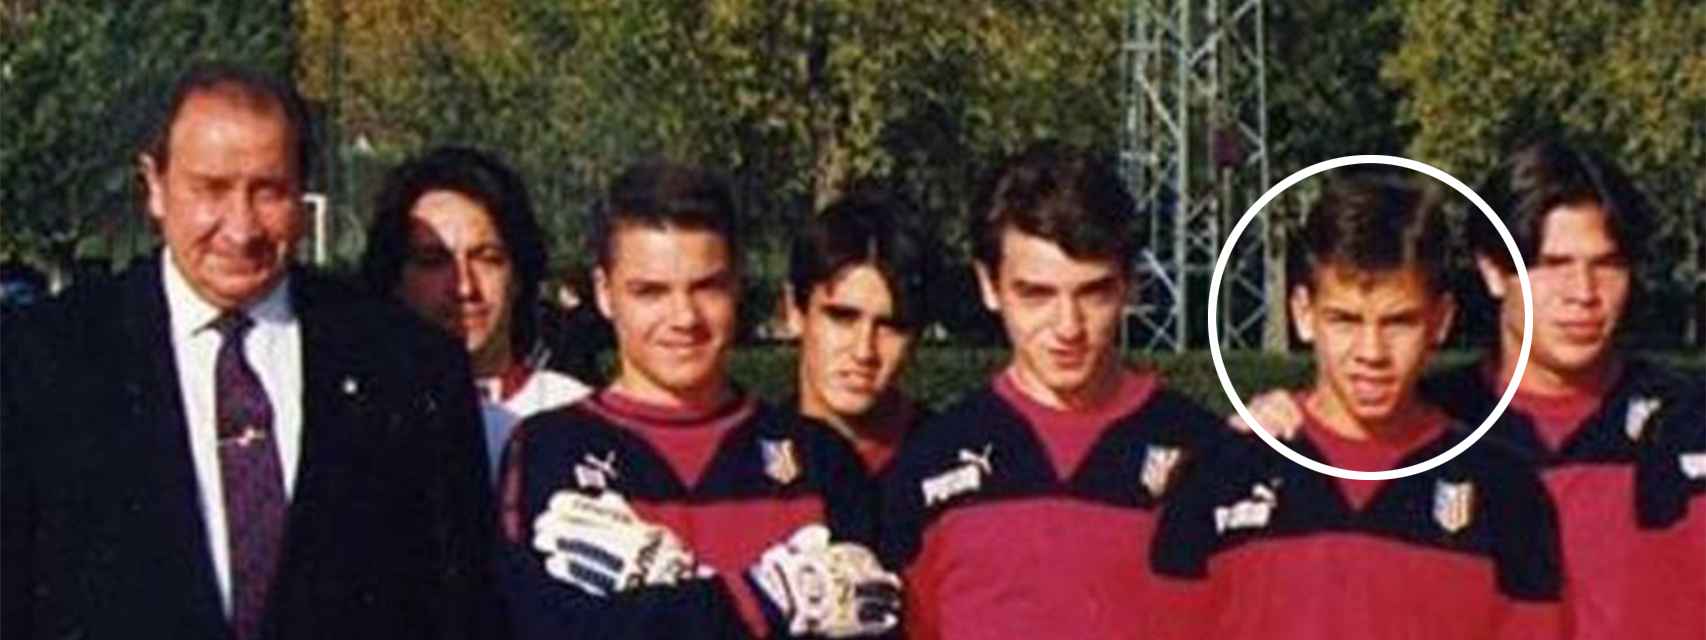 David Muñoz, cuando jugaba en las categorías inferiores del Atlético.